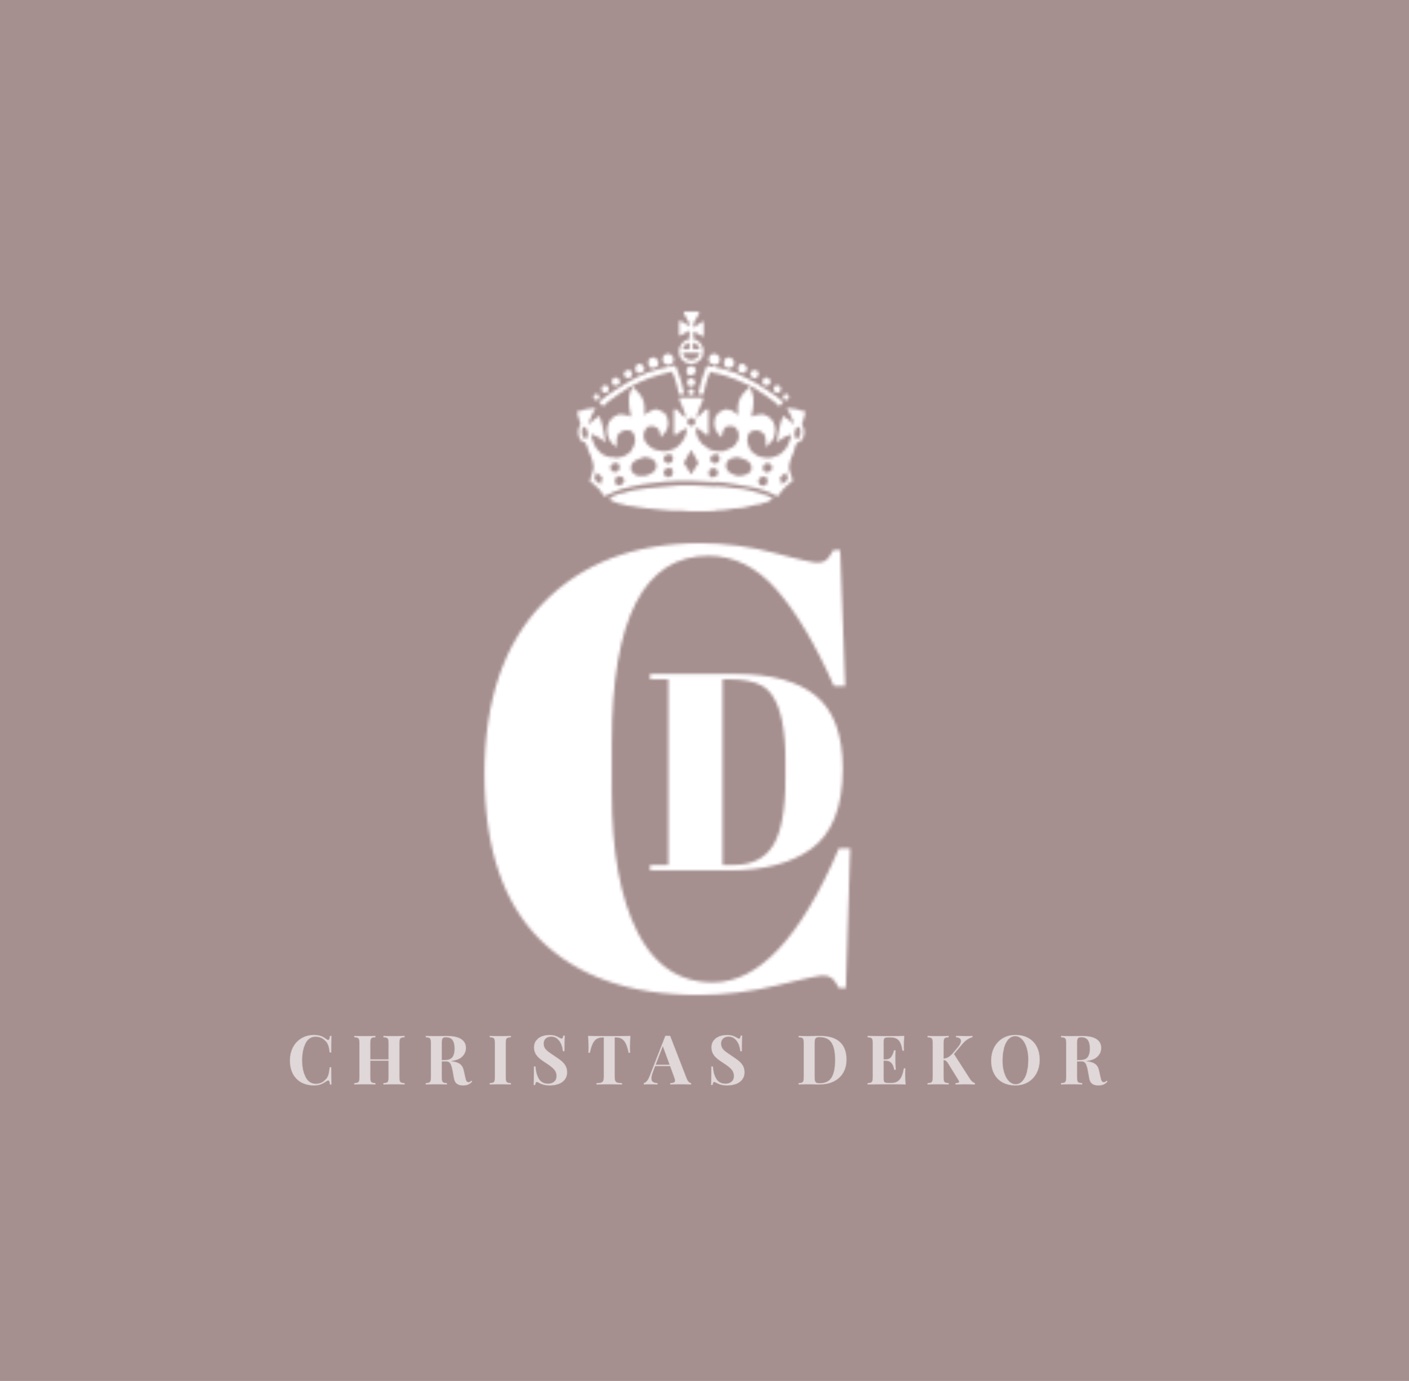 Christas Dekor